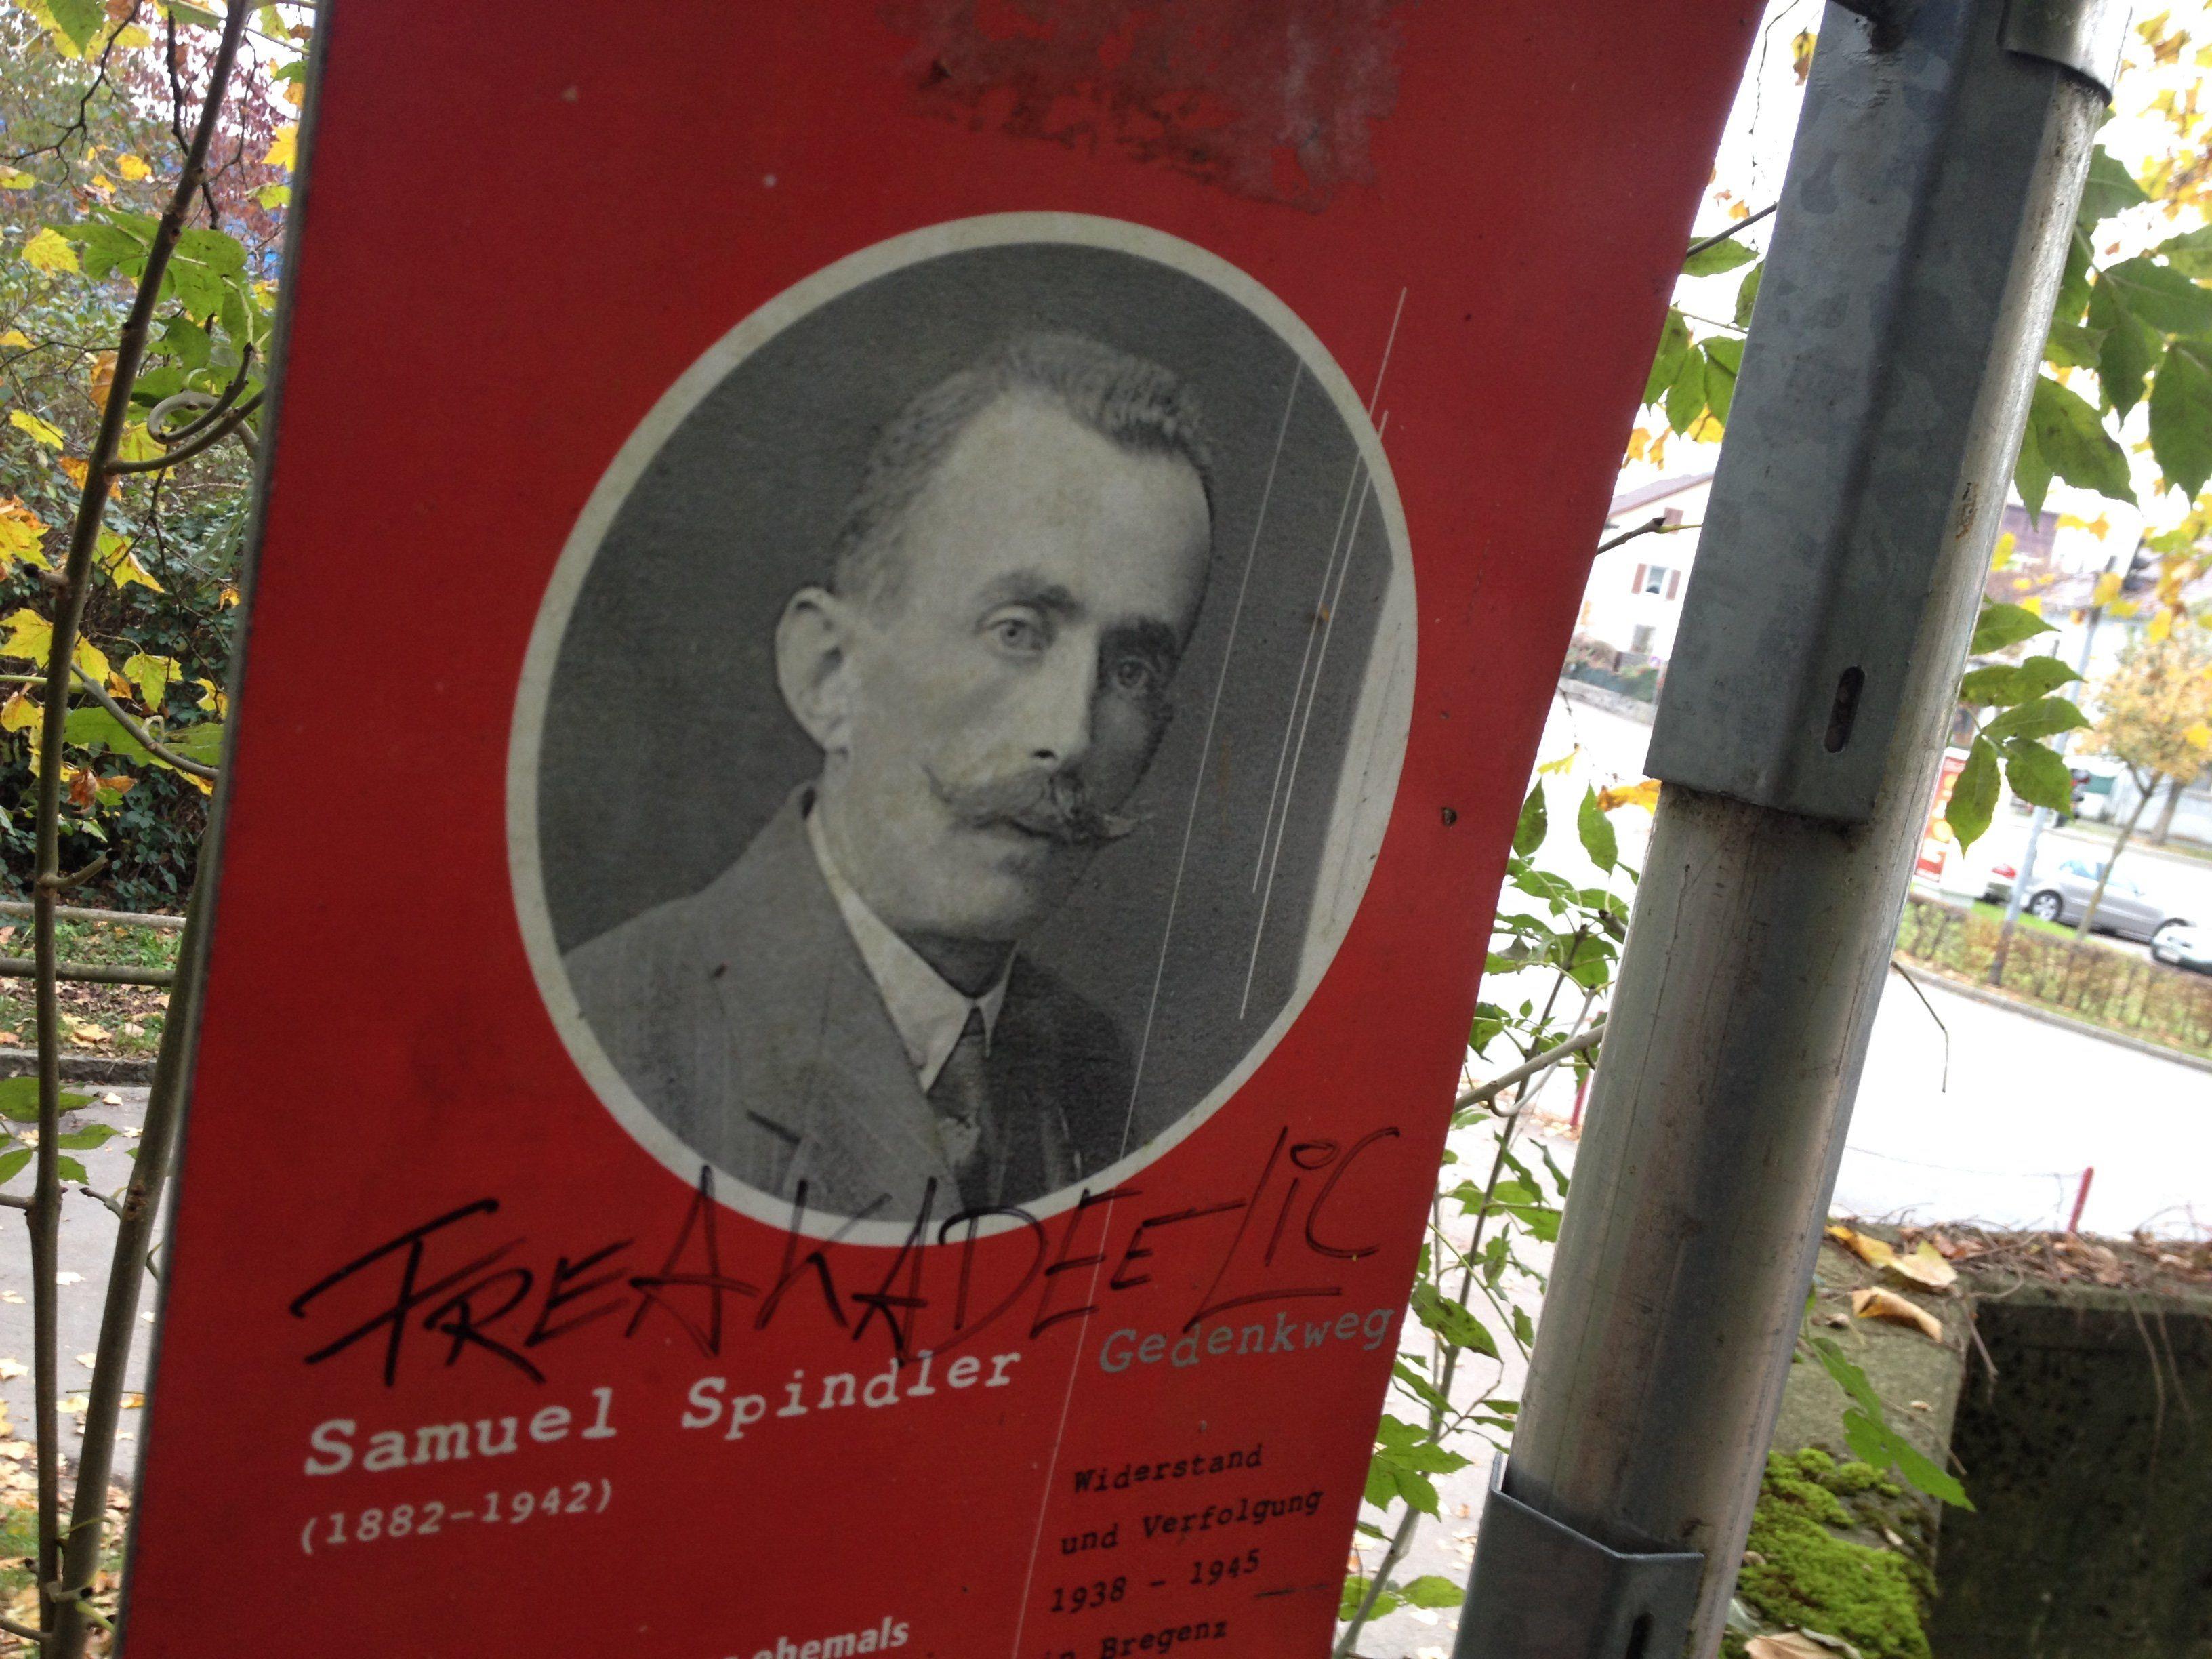 Der Bregenzer Samuel Spindler (1882 . 1942) wurde von den Nazis verfolgt und in den Tod getrieben.